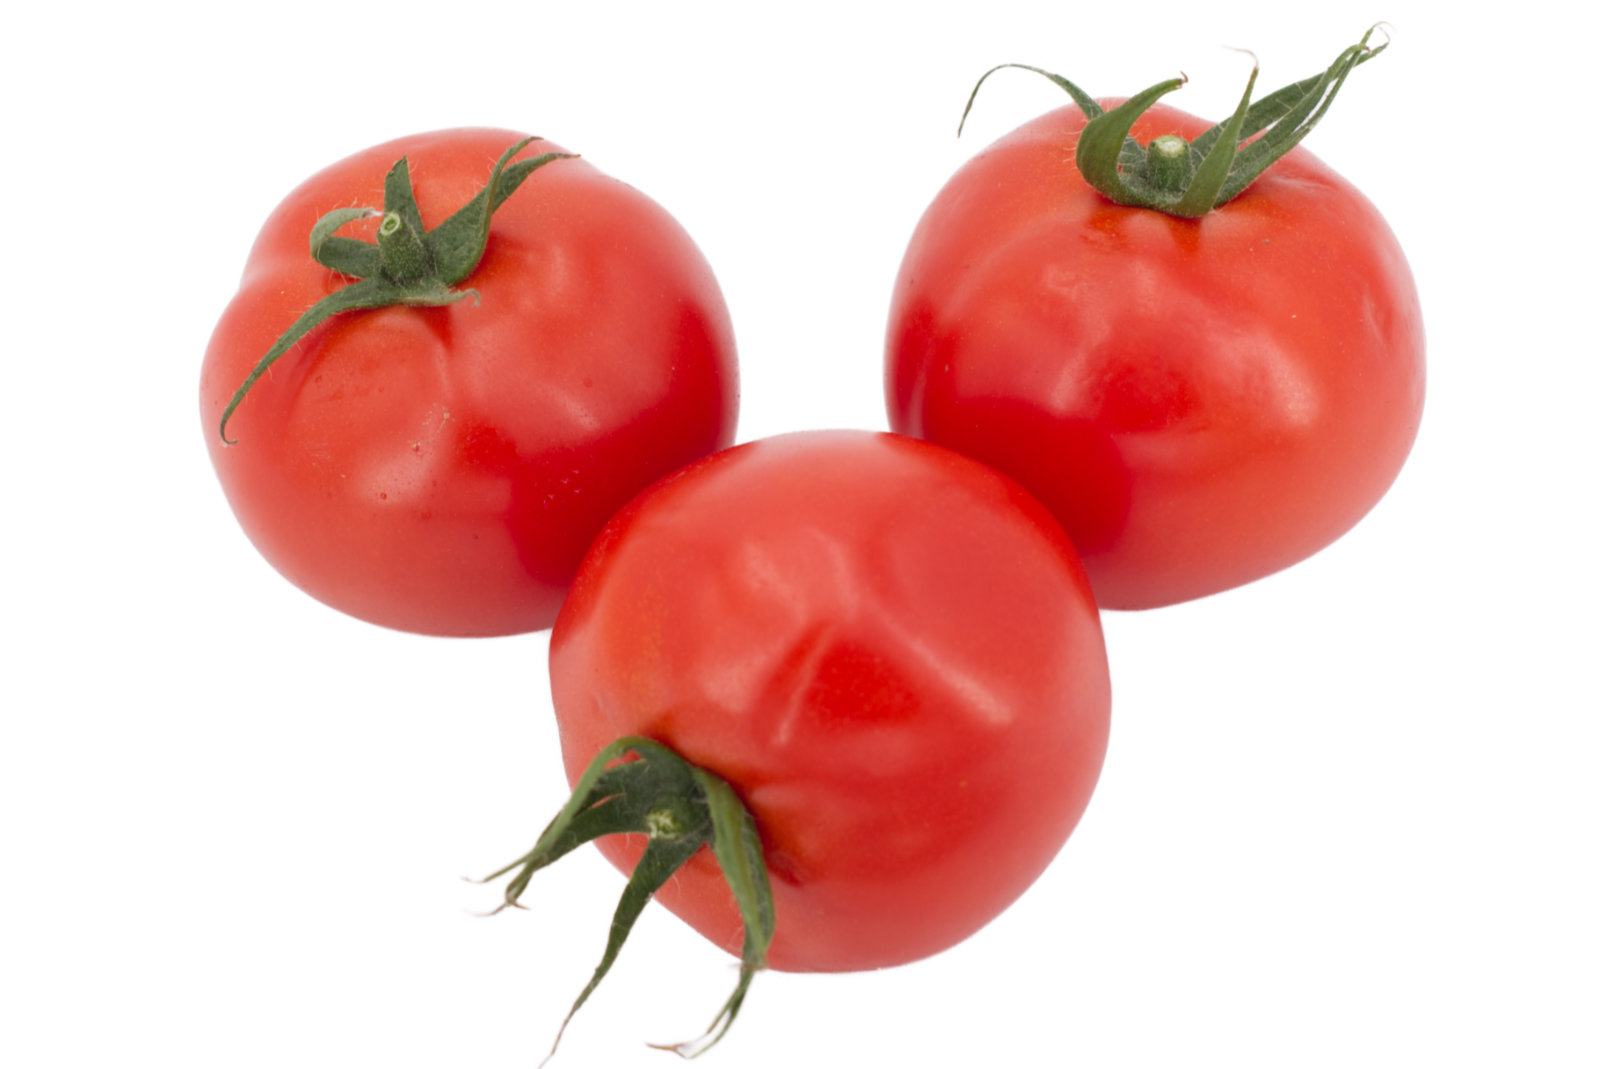 Tomaten "runde" 6kg - Vierländer -